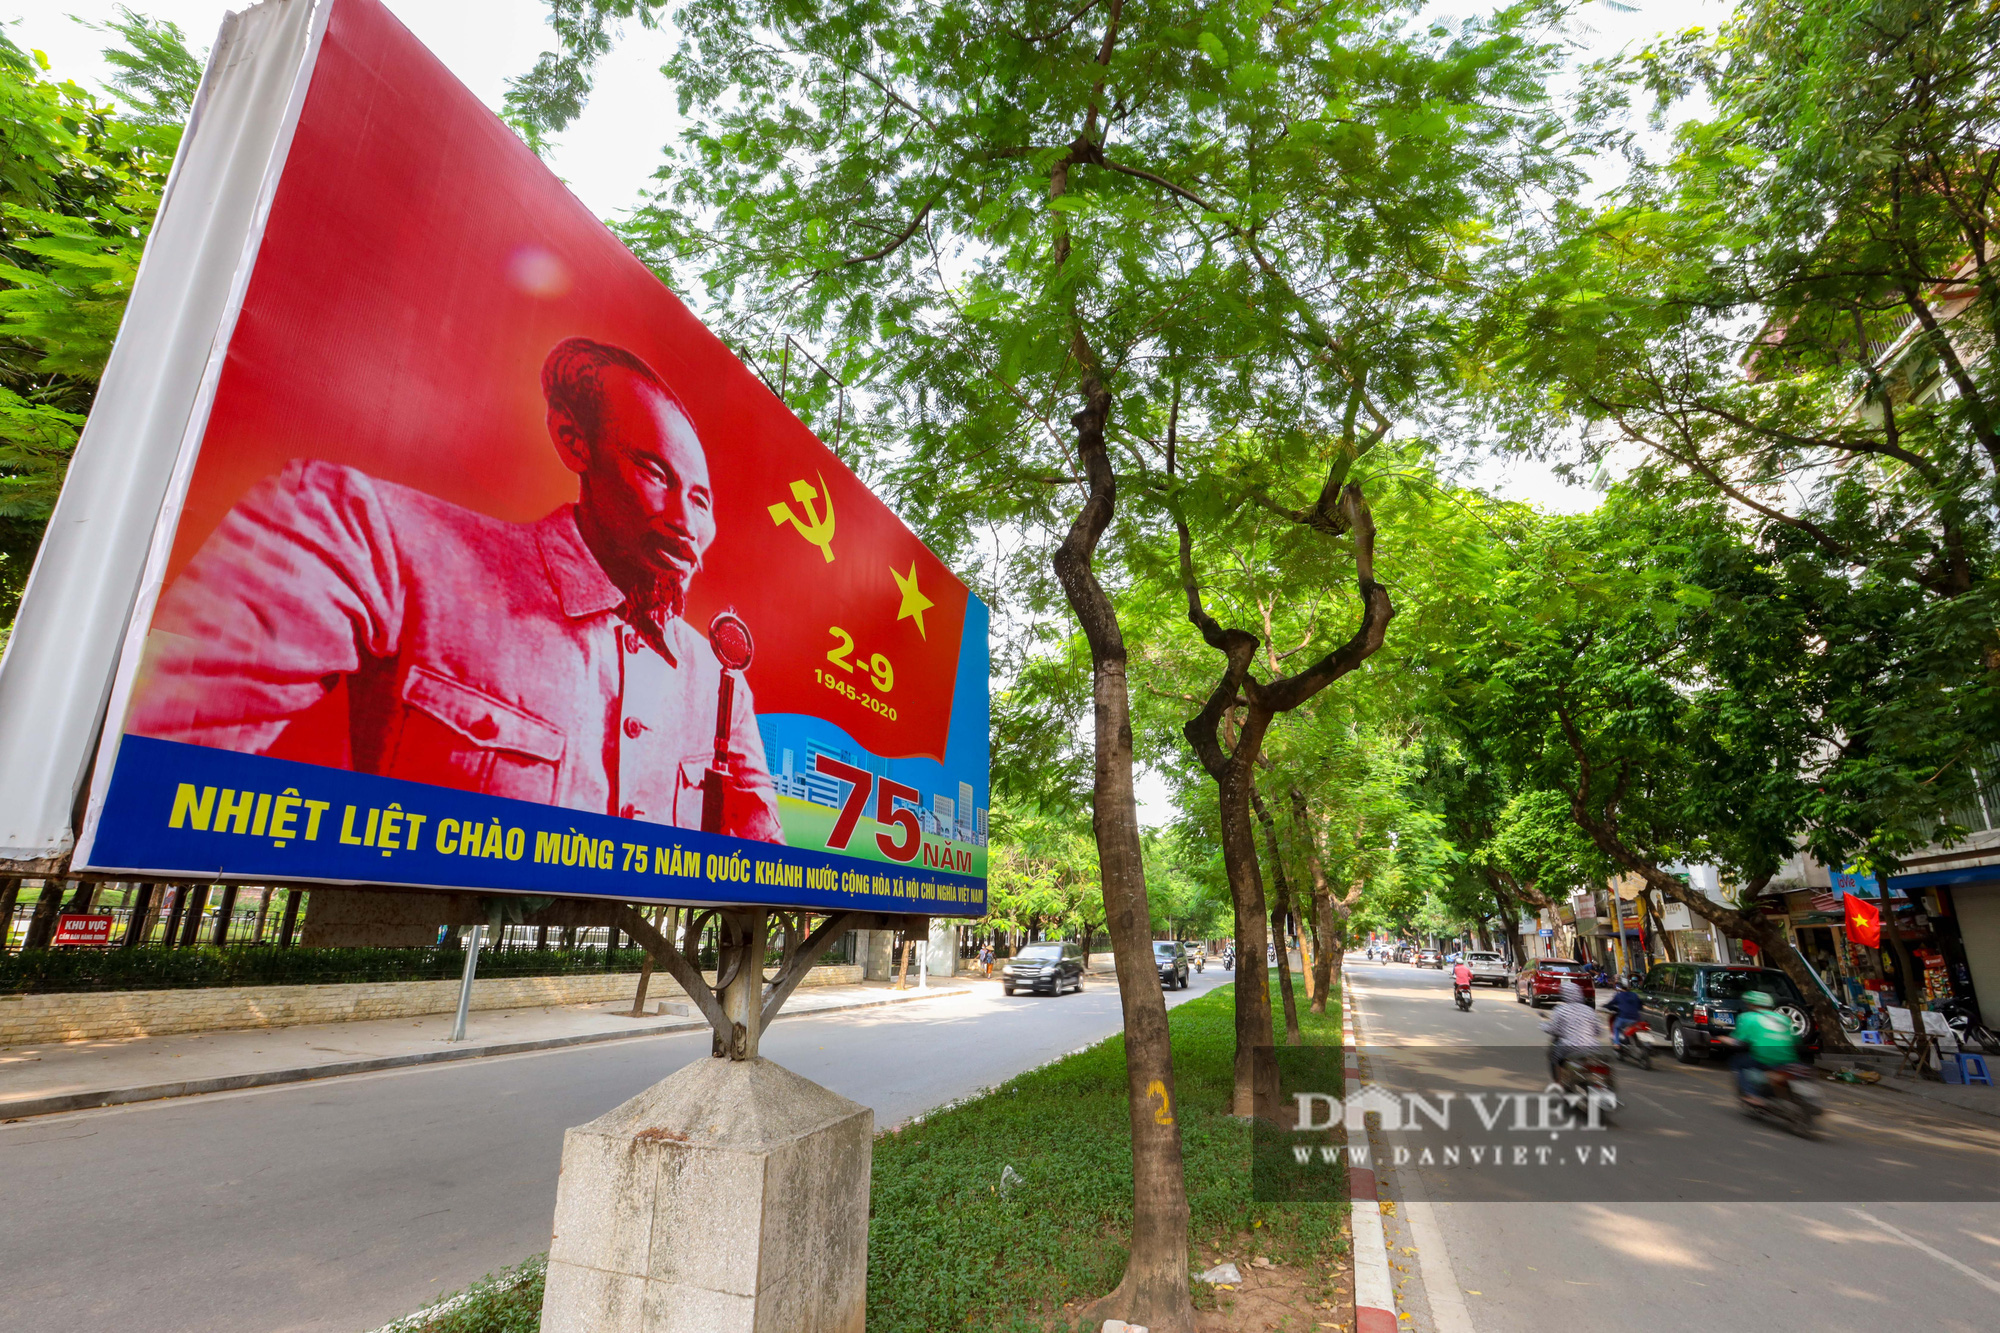 Hà Nội rợp sắc cờ hoa kỉ niệm 75 năm Cách mạng Tháng Tám và Quốc khánh 2/9 - Ảnh 2.